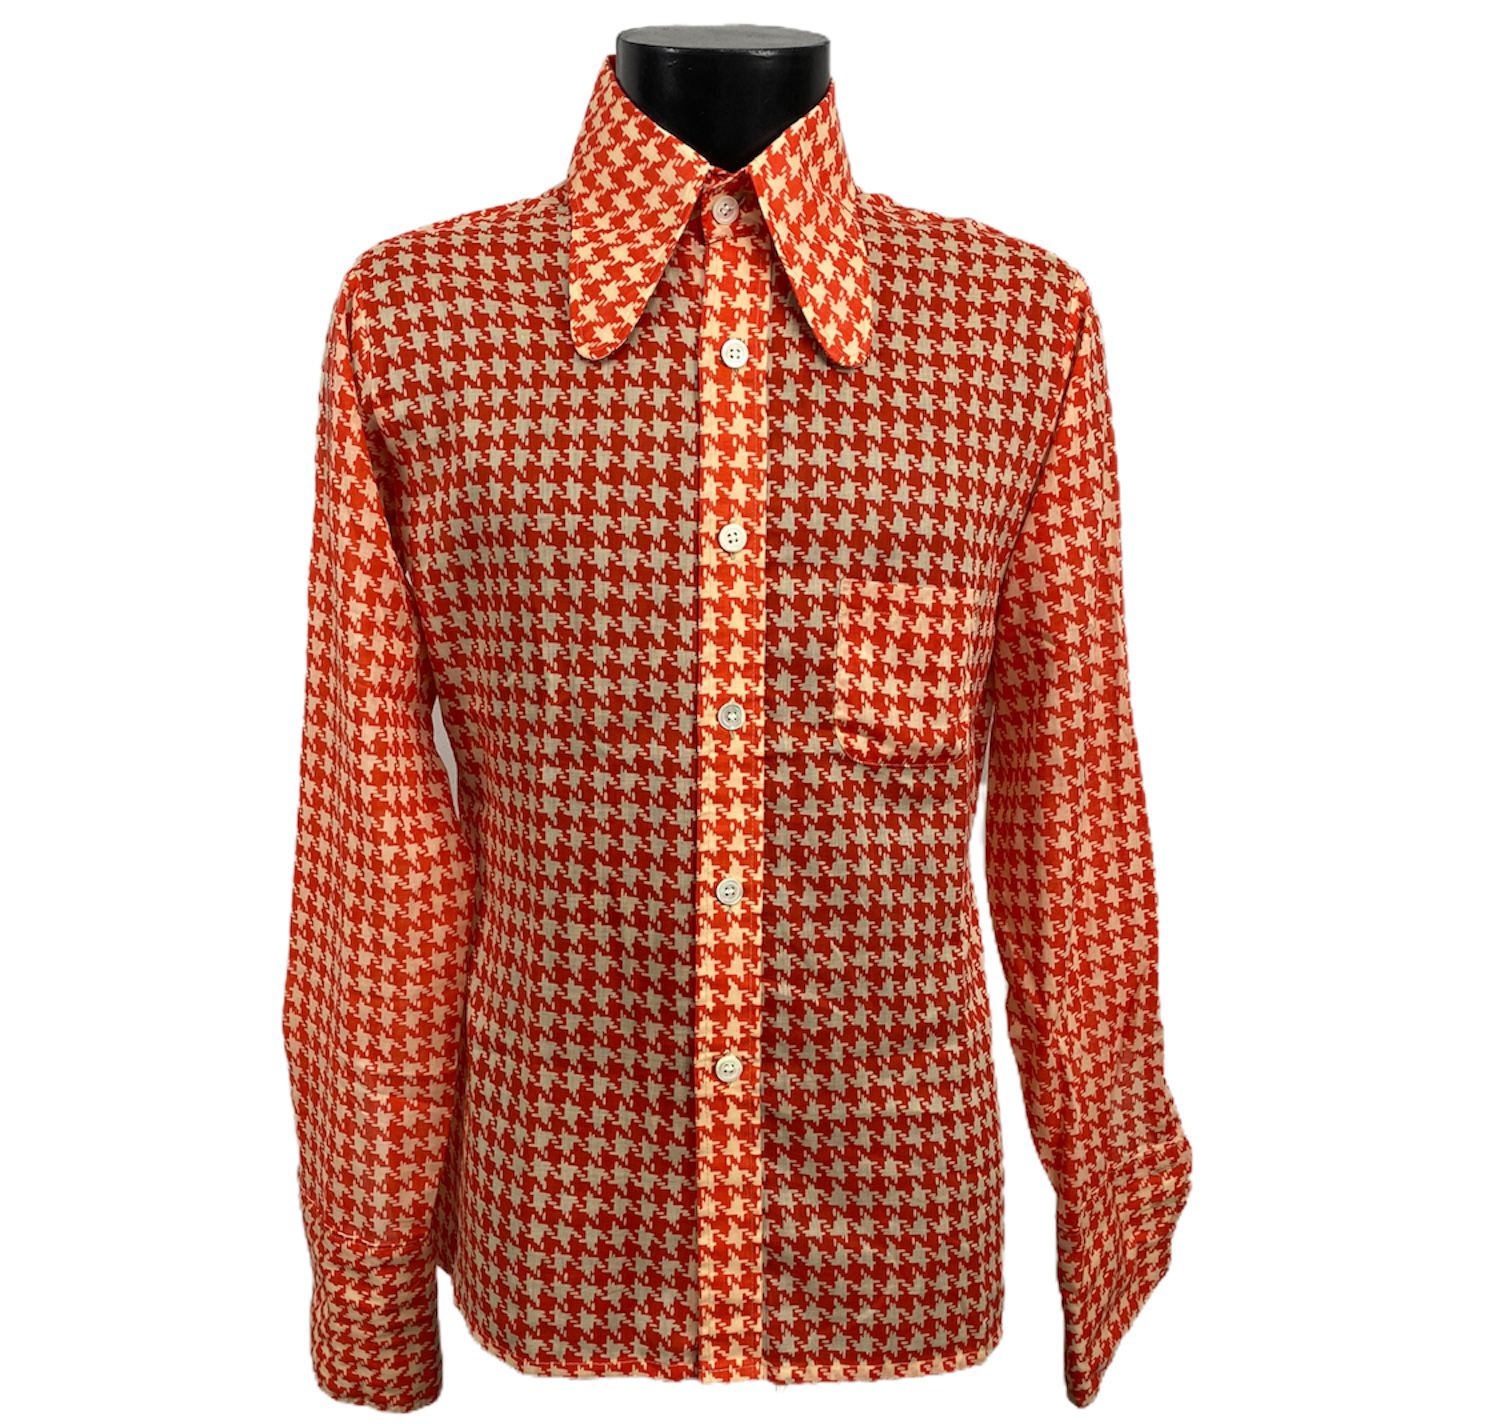 Camicia vintage anni 70 da uomo bianca con pattern arancione e bottoni bianchi